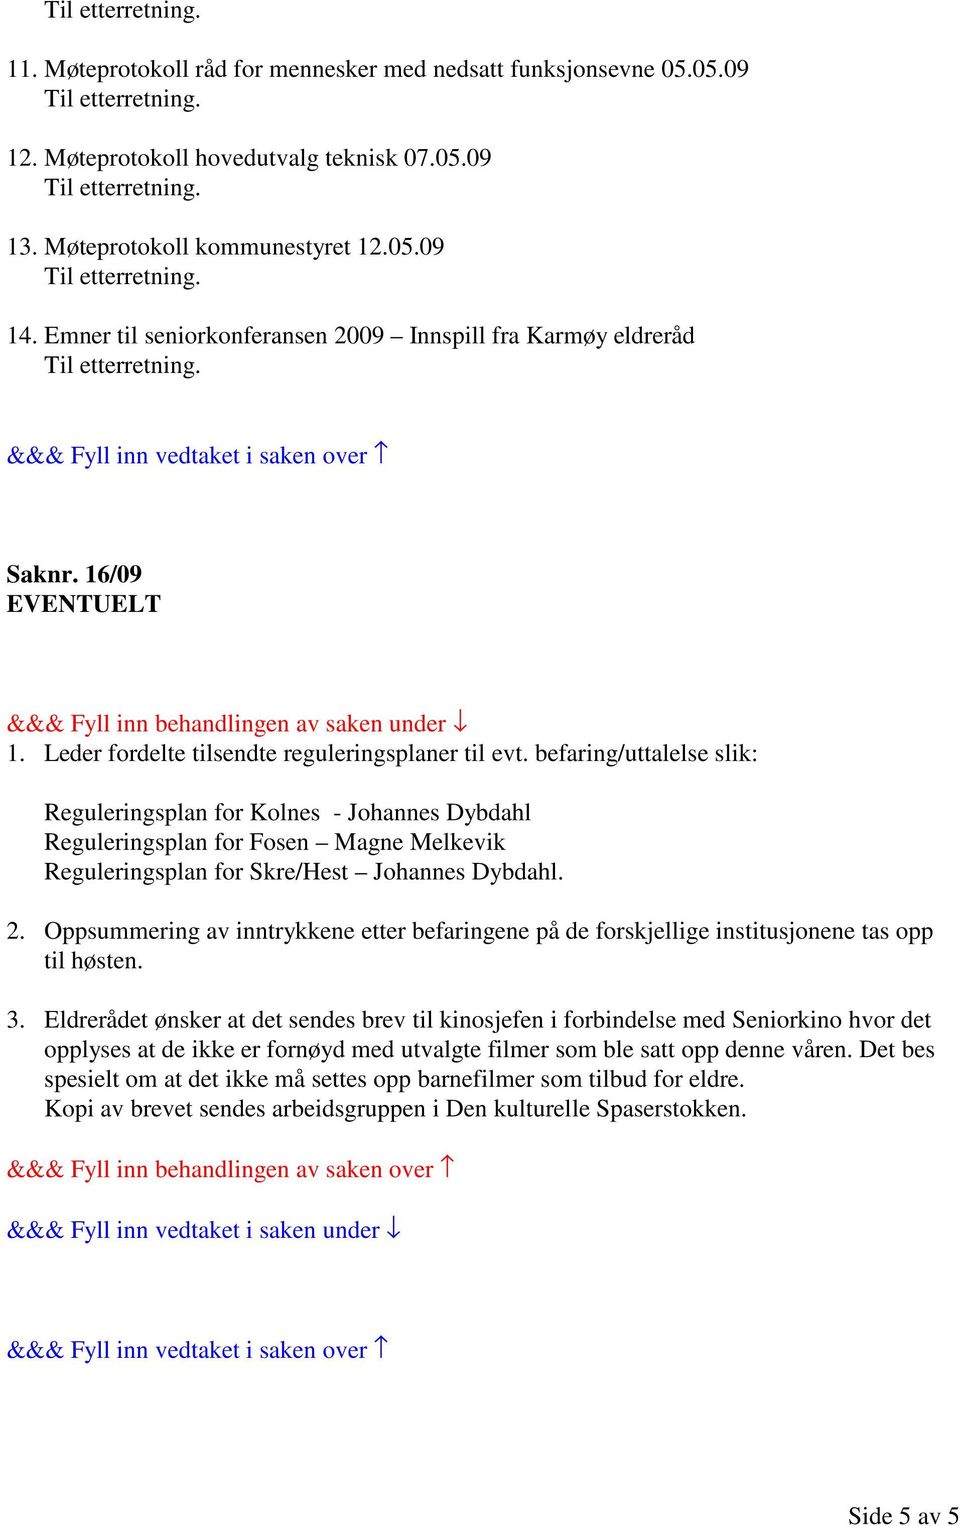 befaring/uttalelse slik: Reguleringsplan for Kolnes - Johannes Dybdahl Reguleringsplan for Fosen Magne Melkevik Reguleringsplan for Skre/Hest Johannes Dybdahl. 2.